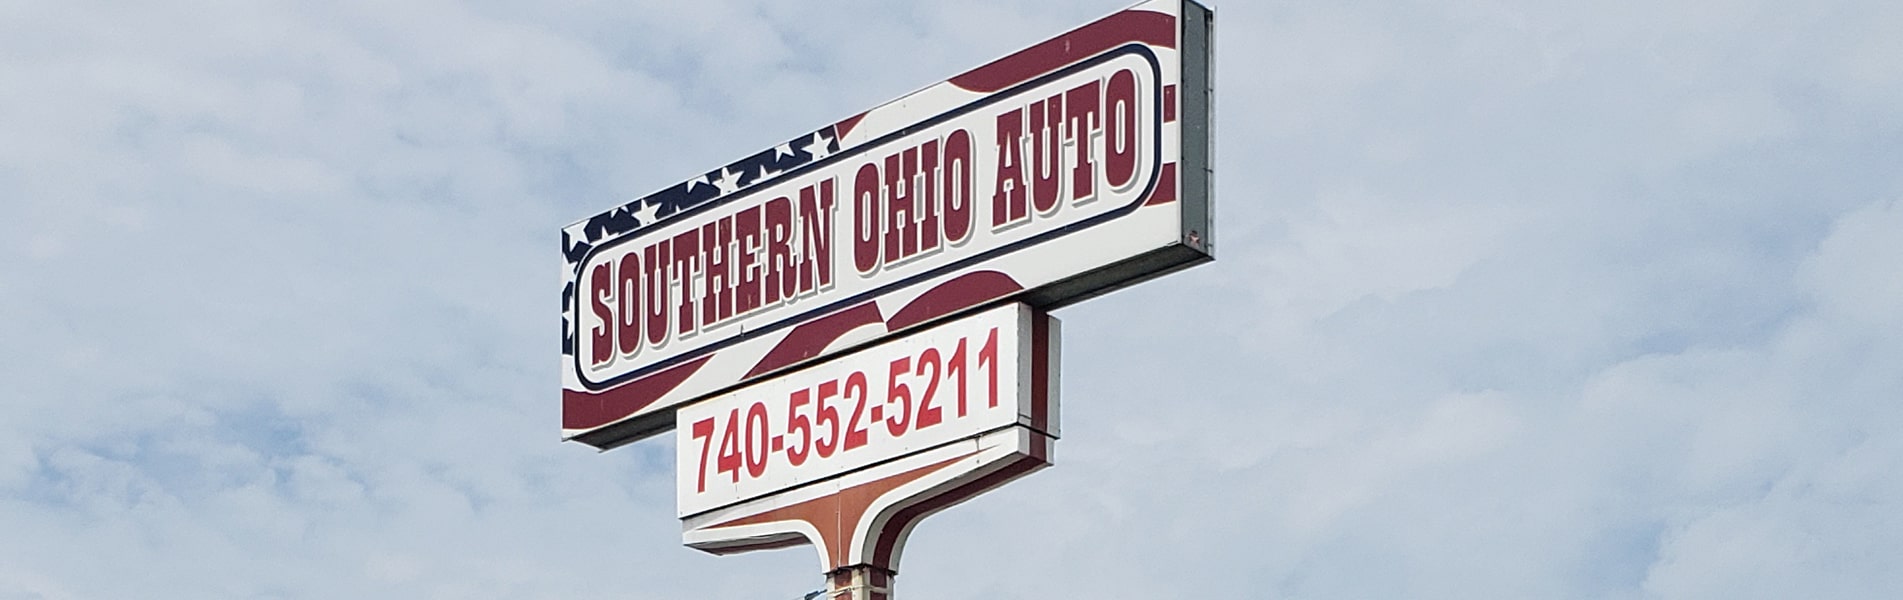 Southern Ohio Auto & Truck